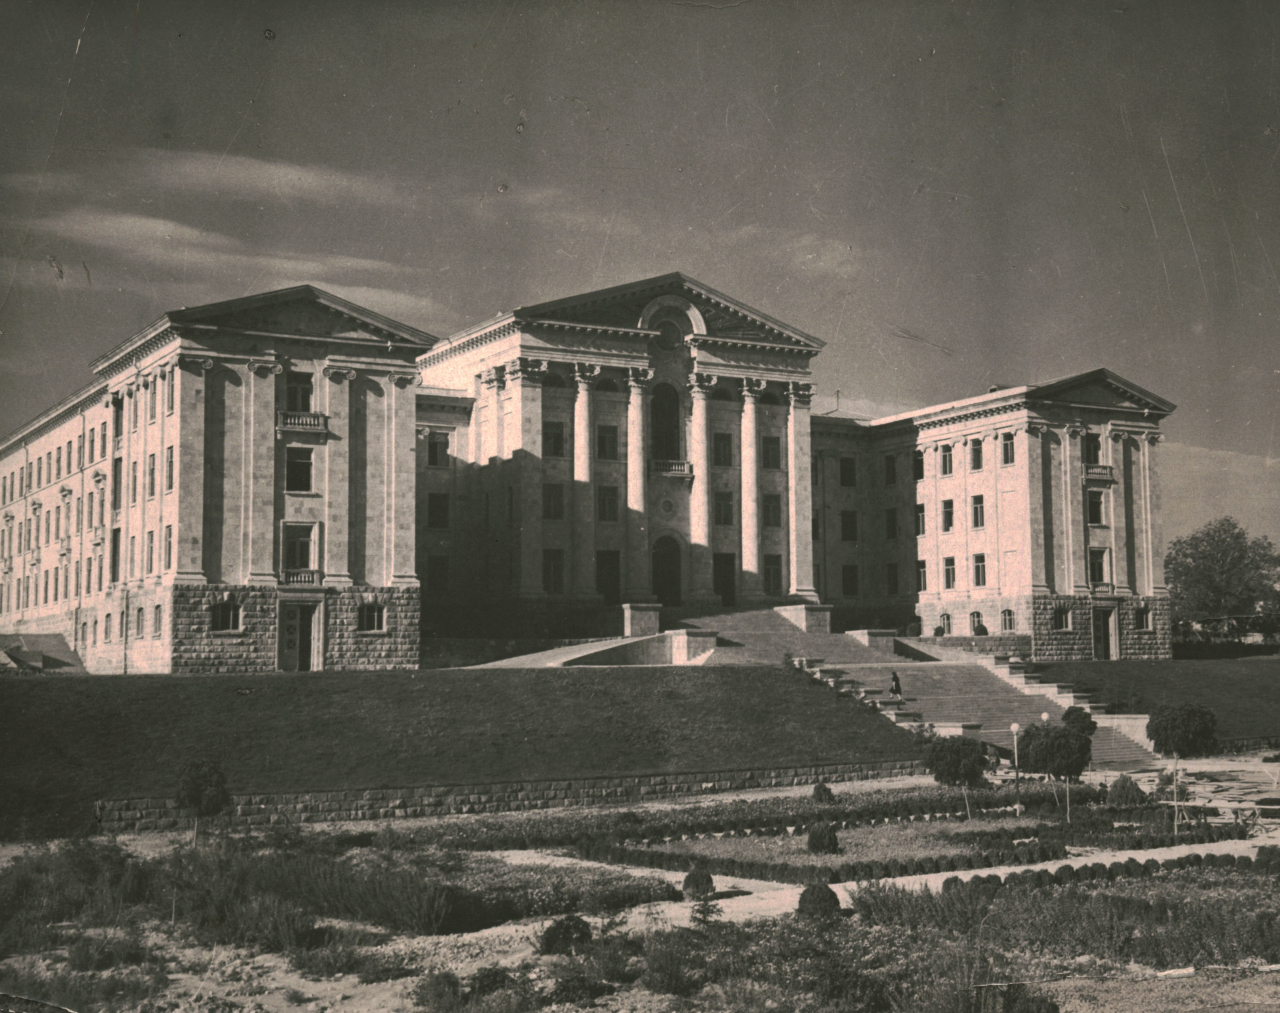 Հայաստանի կոմունիստական կուսակցության կենտրոնական կոմիտեի շենքը Երևանում (Հայաստանի Հանրապետության Ազգային ժողովի շենք)